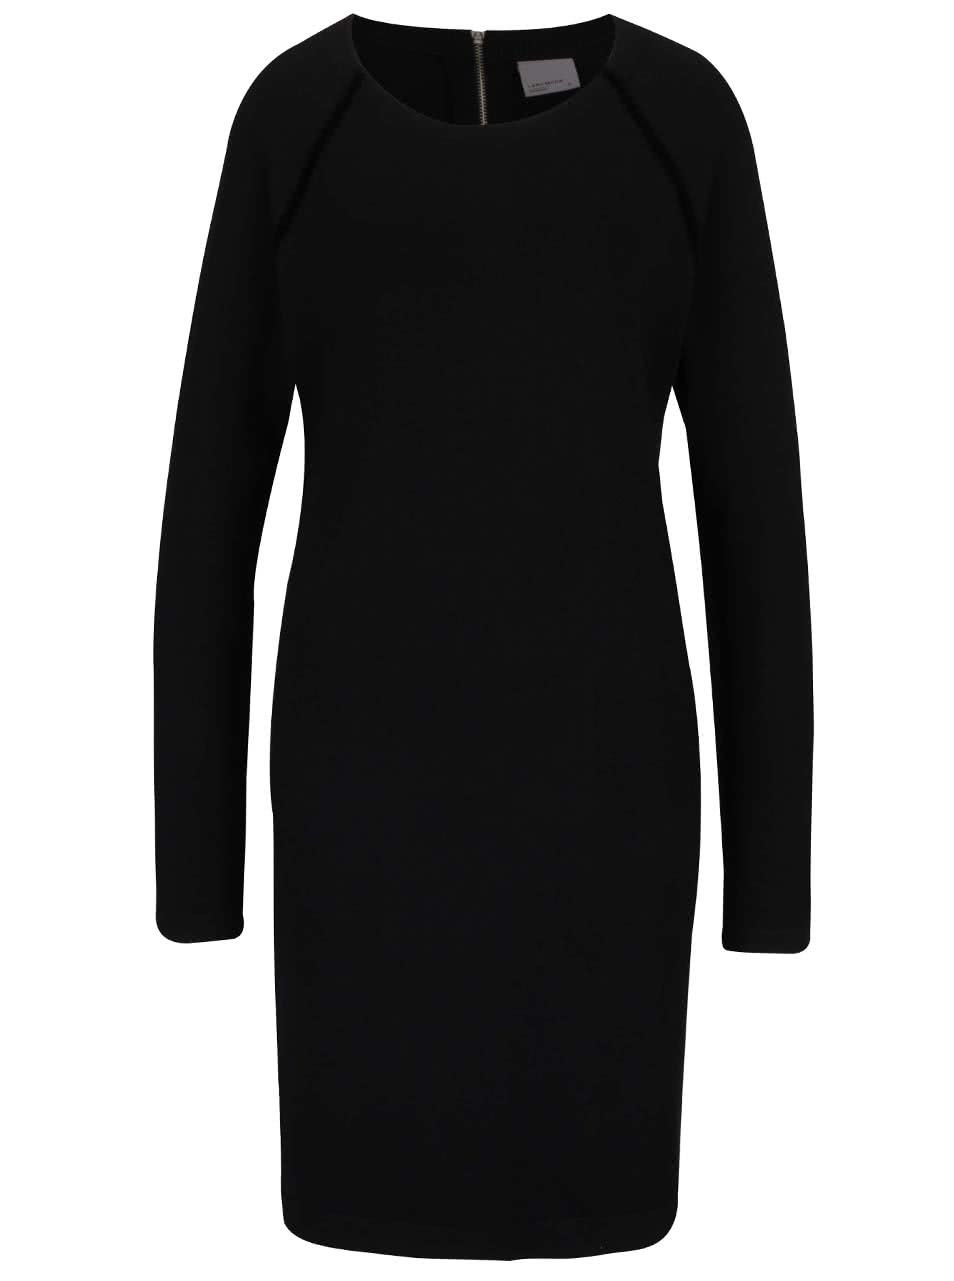 Černé volnější svetrové šaty s dlouhým rukávem Vero Moda Glory